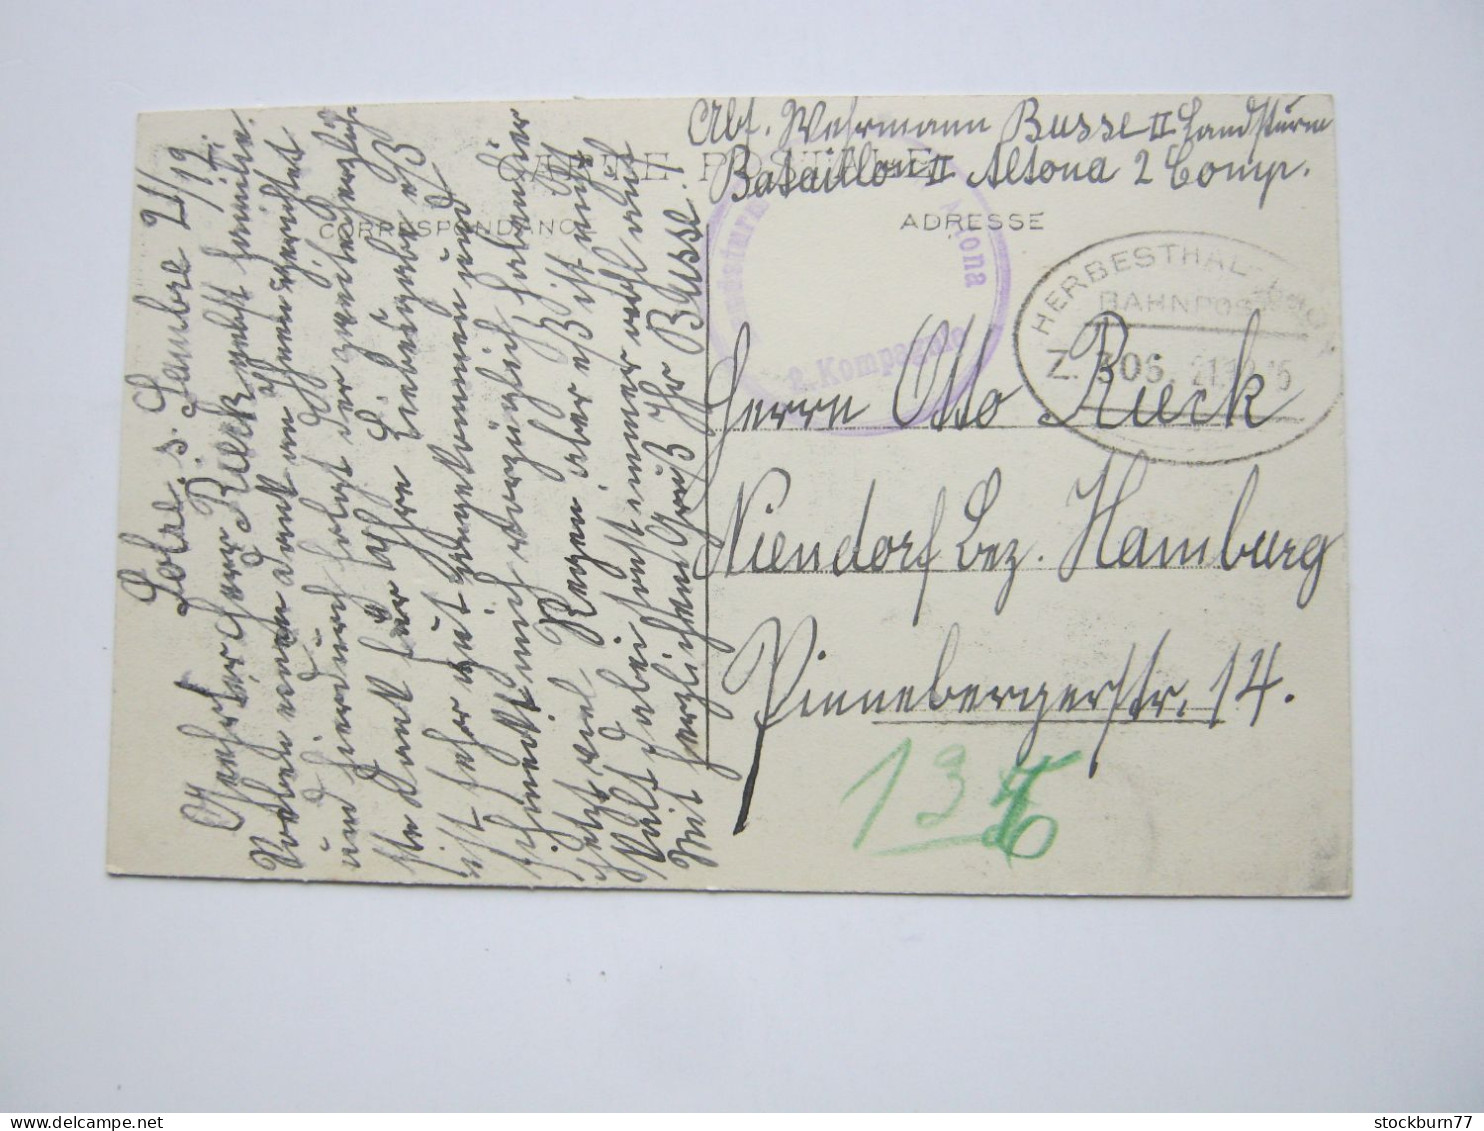 1915 , Bahnpost : HERBESTHAL - LAON /  Z. 306 , Klarer Stempel Auf Karte Aus SOLRE-SUR-SAMPRE , CP (Gare) - OC26/37 Territoire Des Etapes